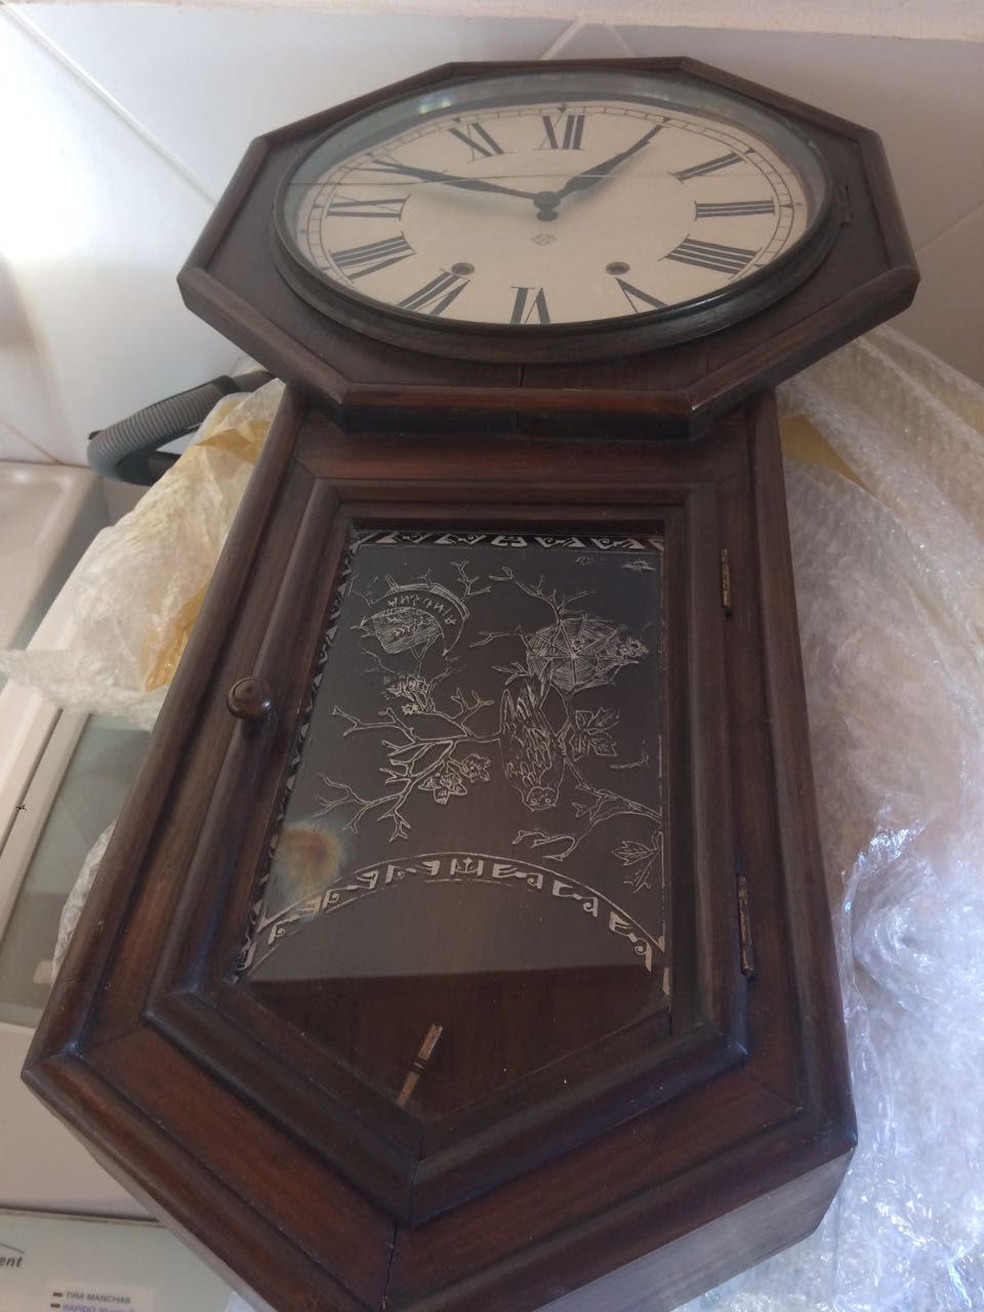 Relógio antigo está entre os bens que serão avaliados pela PF (Foto: Divulgação/MPF)